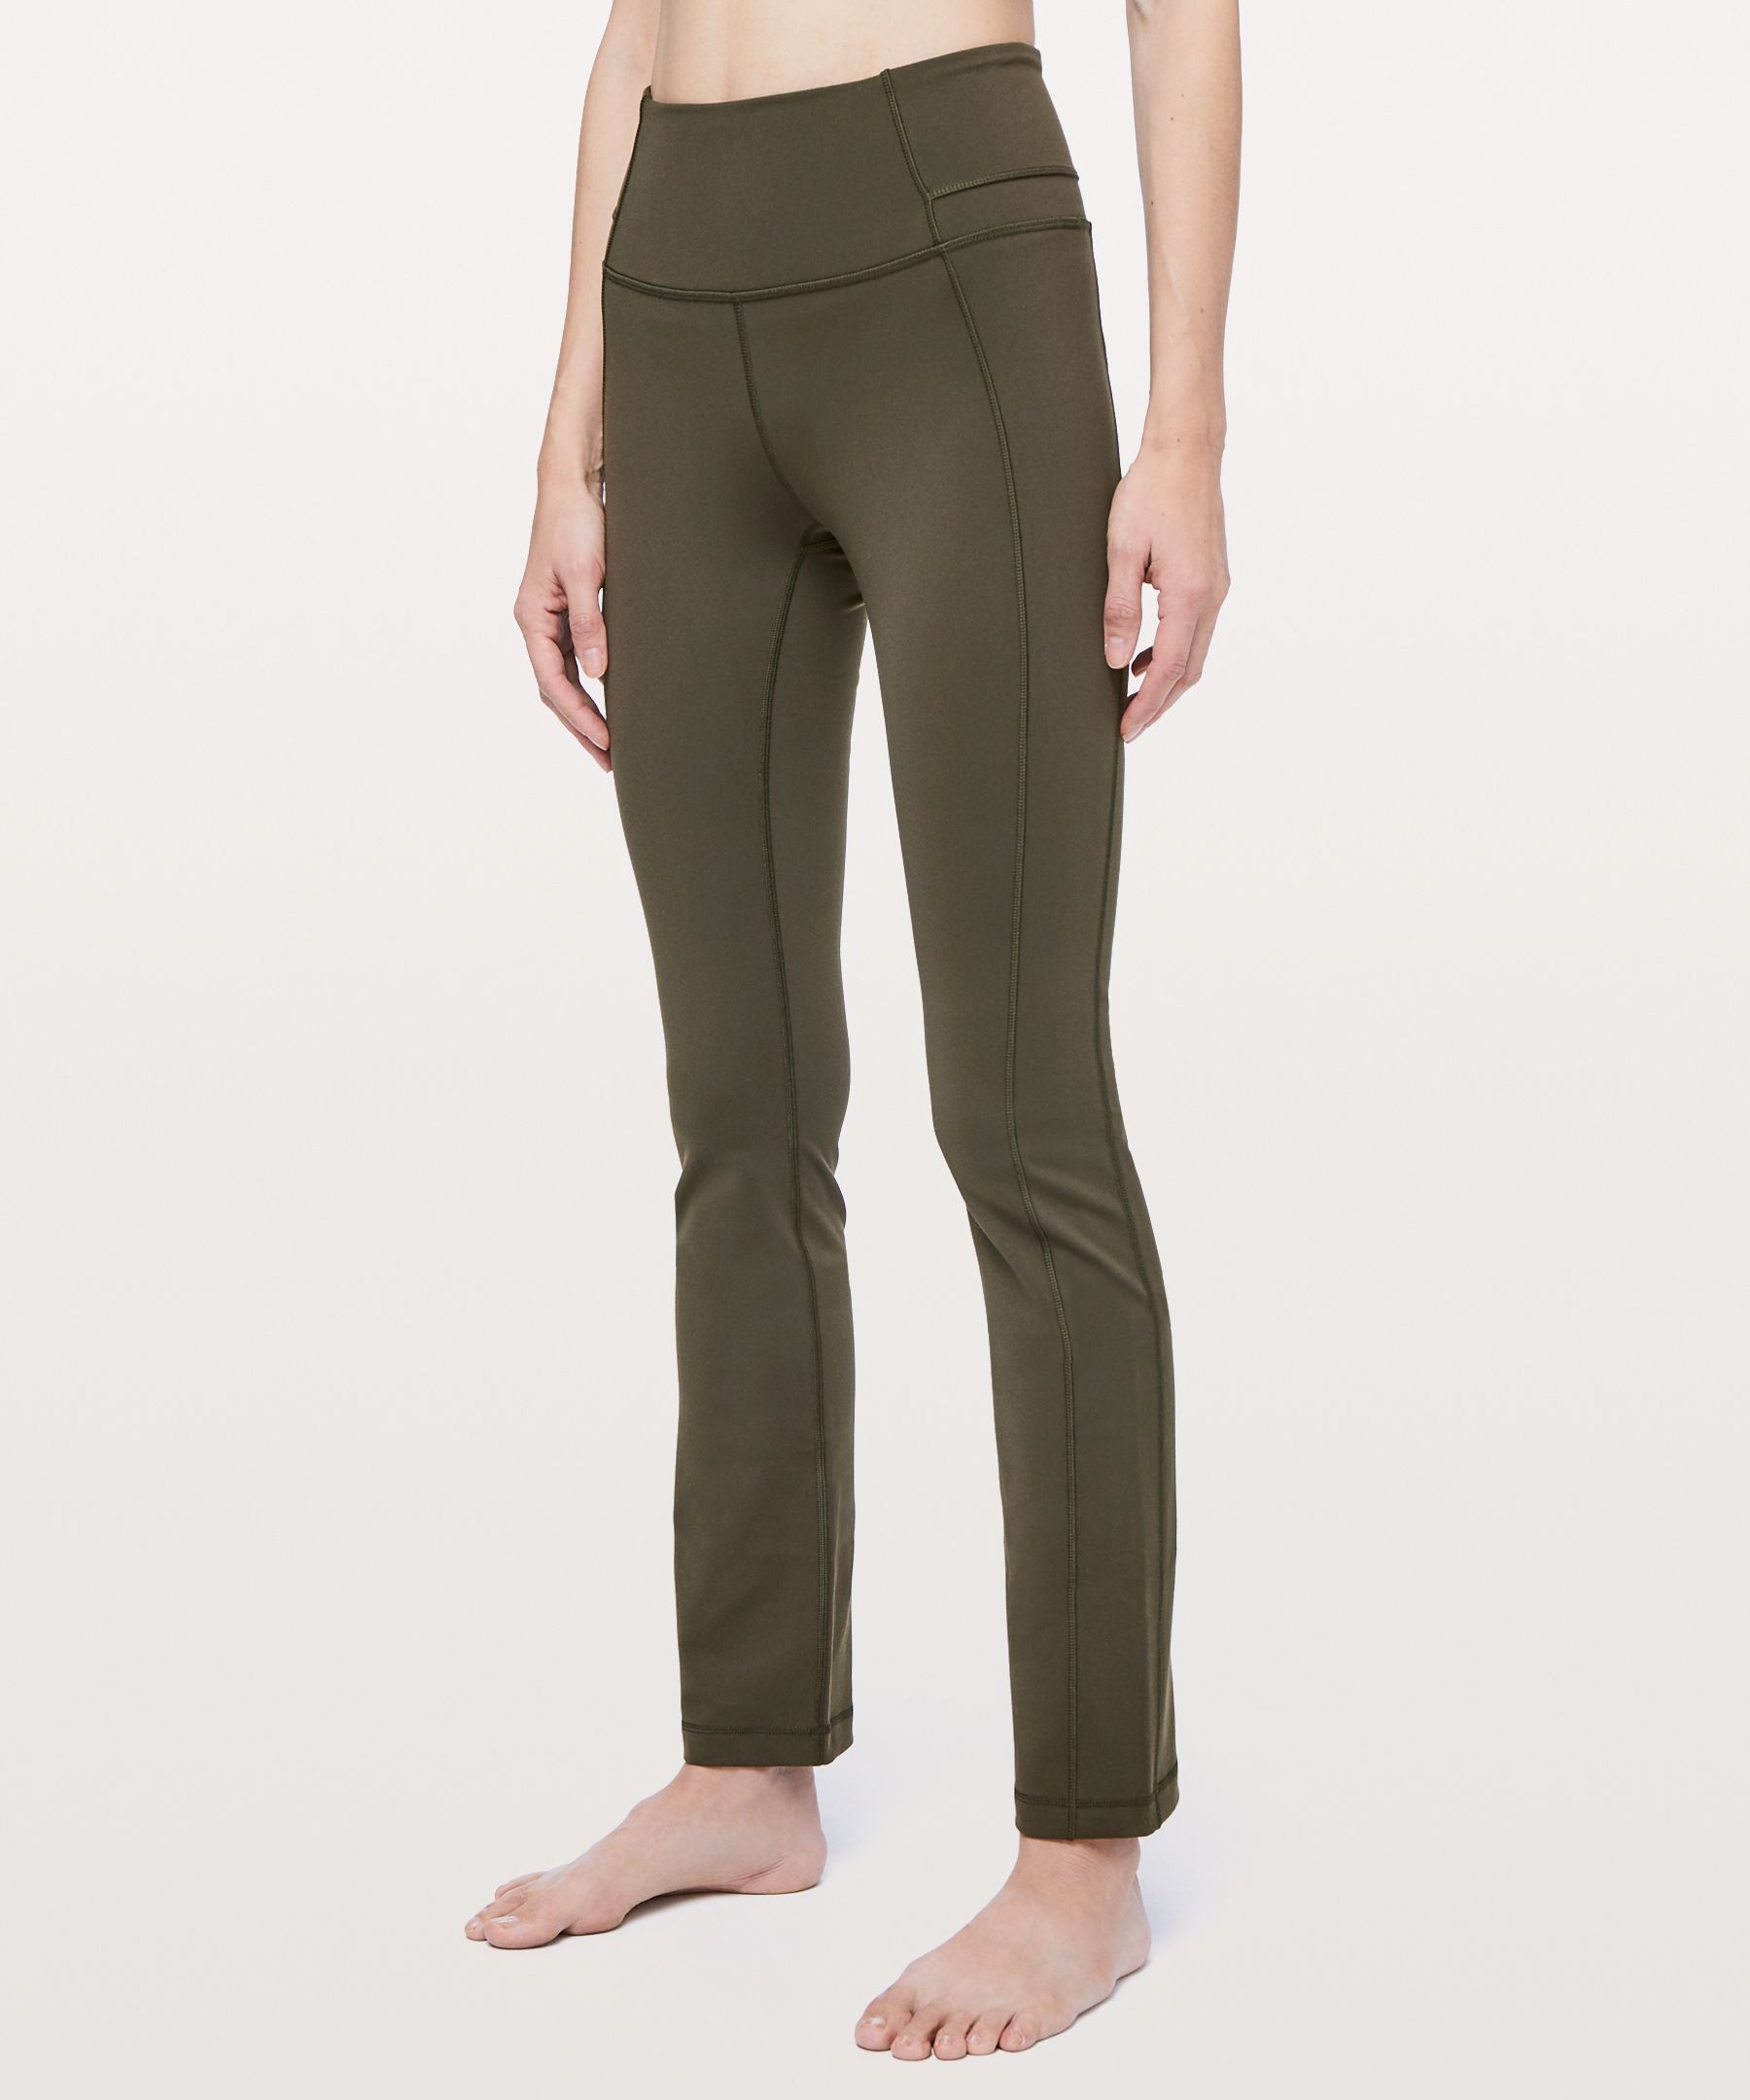 Lululemon Align Pant Full Length Yoga Pants (Black, 4) 